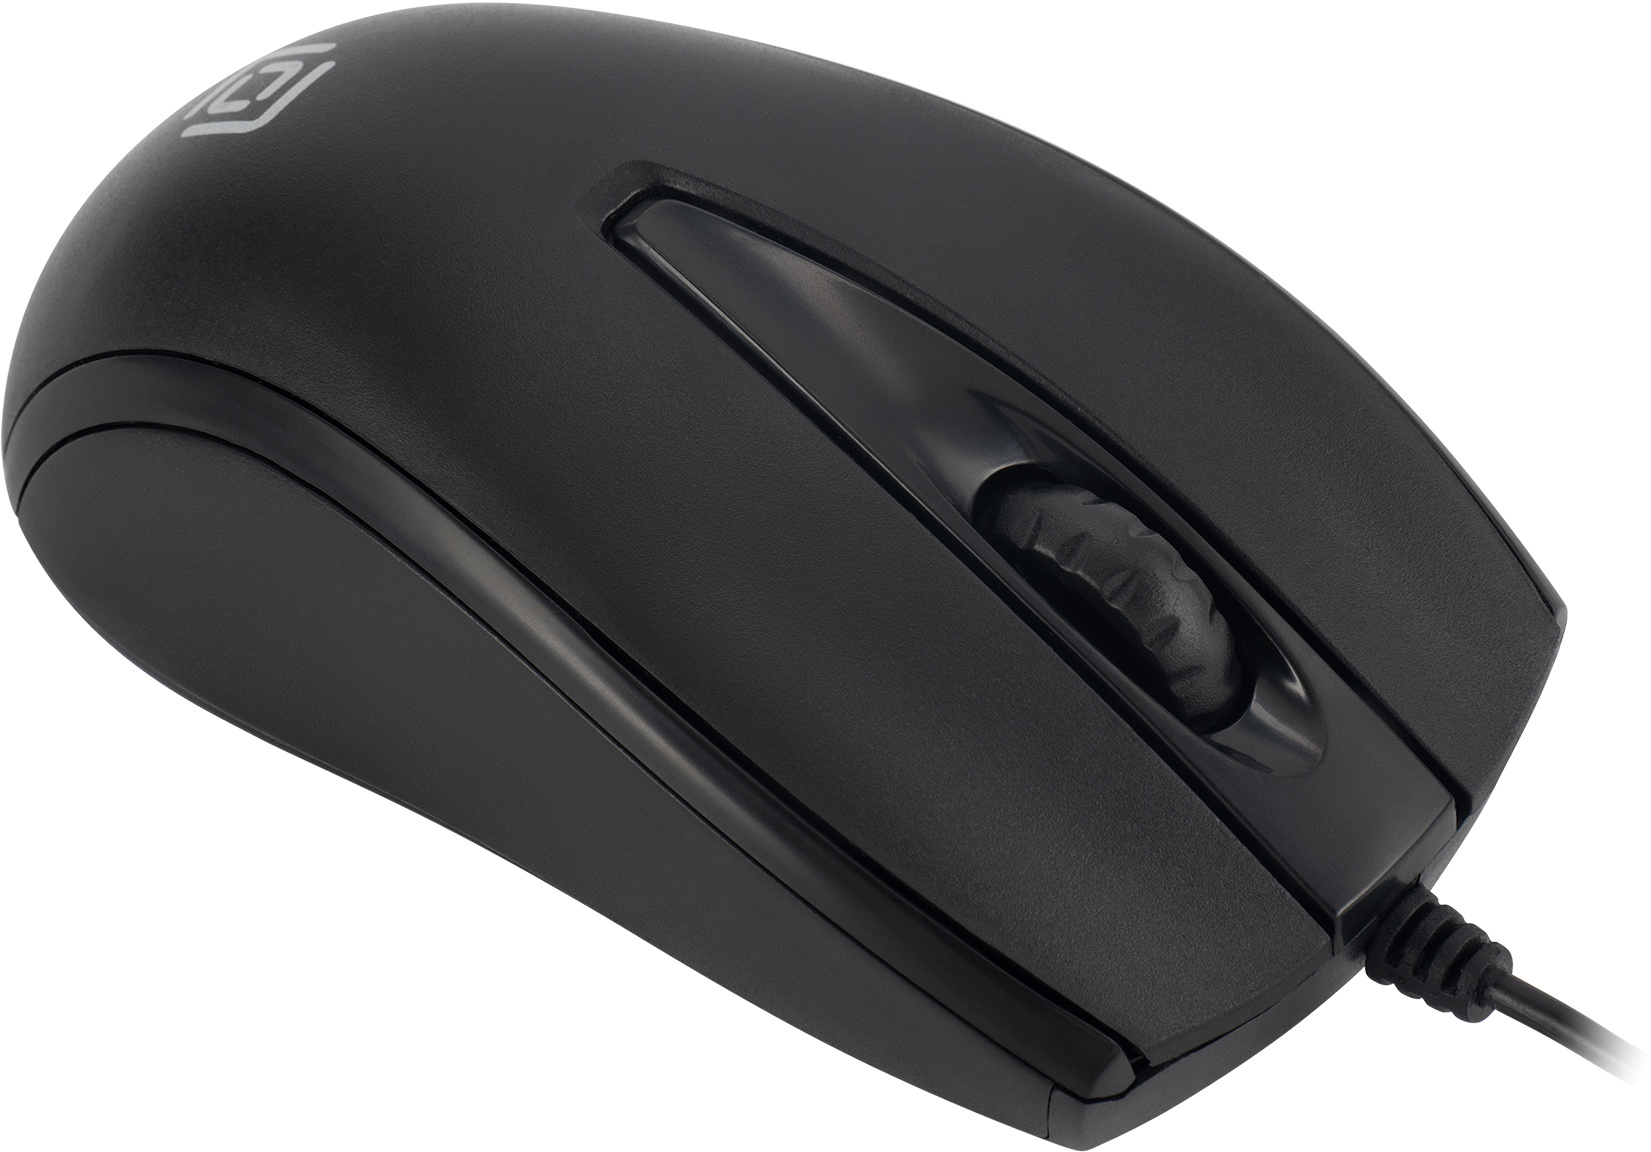 Клавиатура+мышь Oklick 630M клав:черный мышь:черный USB